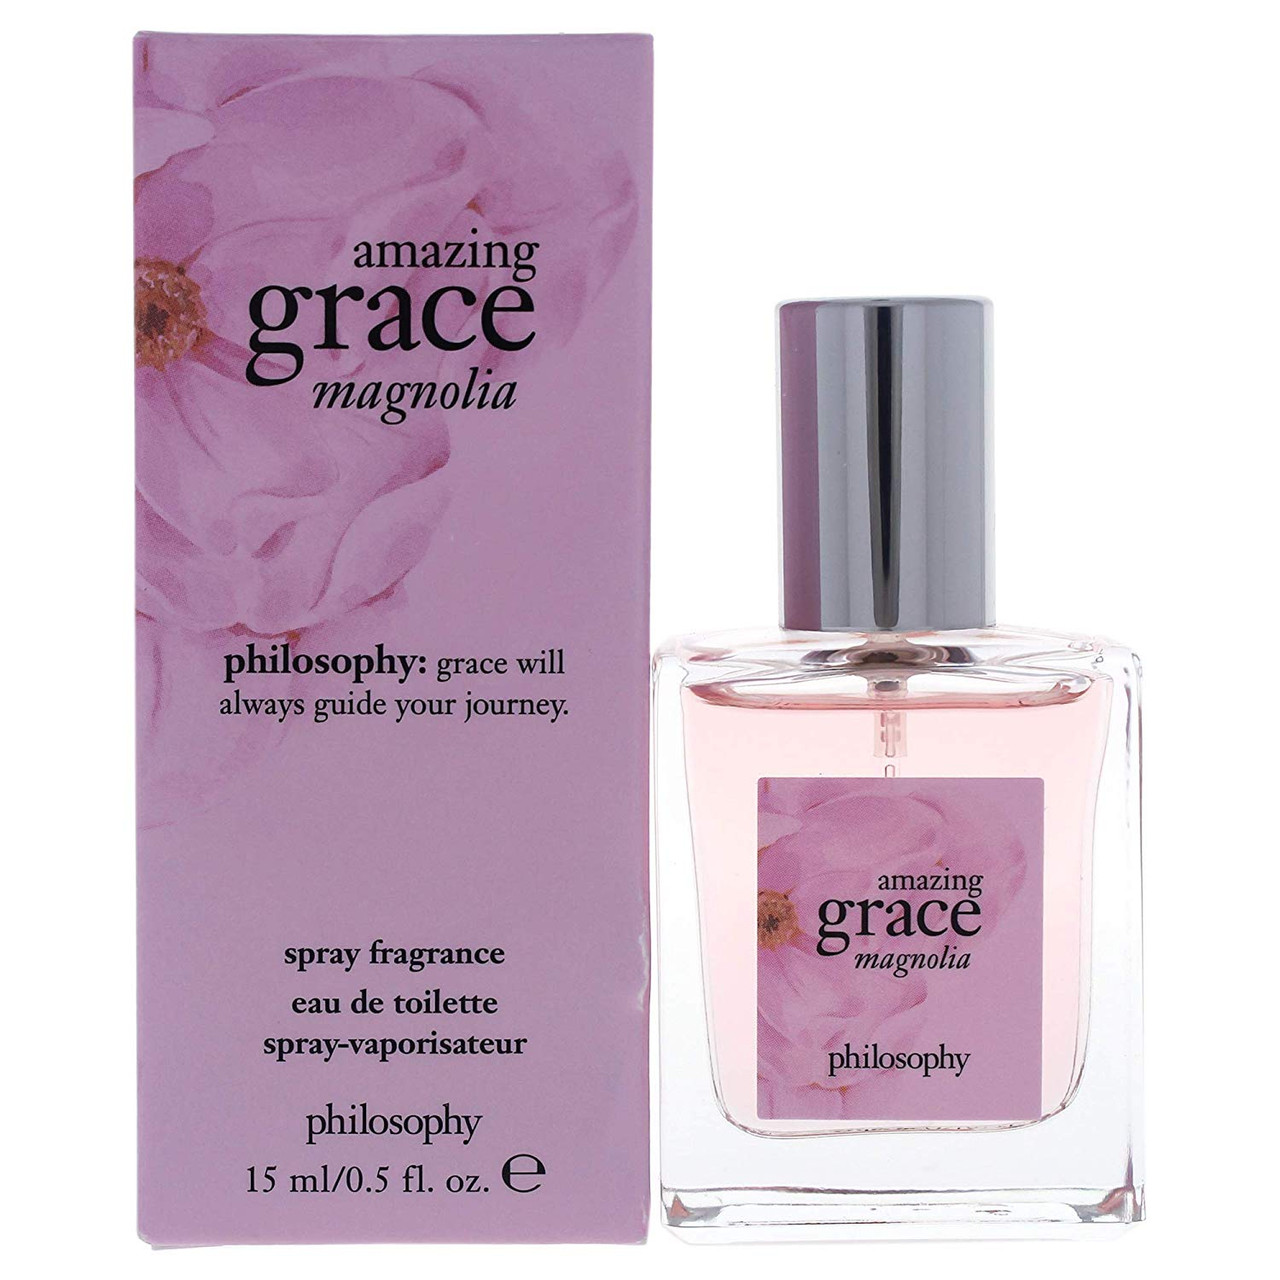 Philosophy Pure Grace Fragrance 0.5 oz Eau de Toilette Spray 